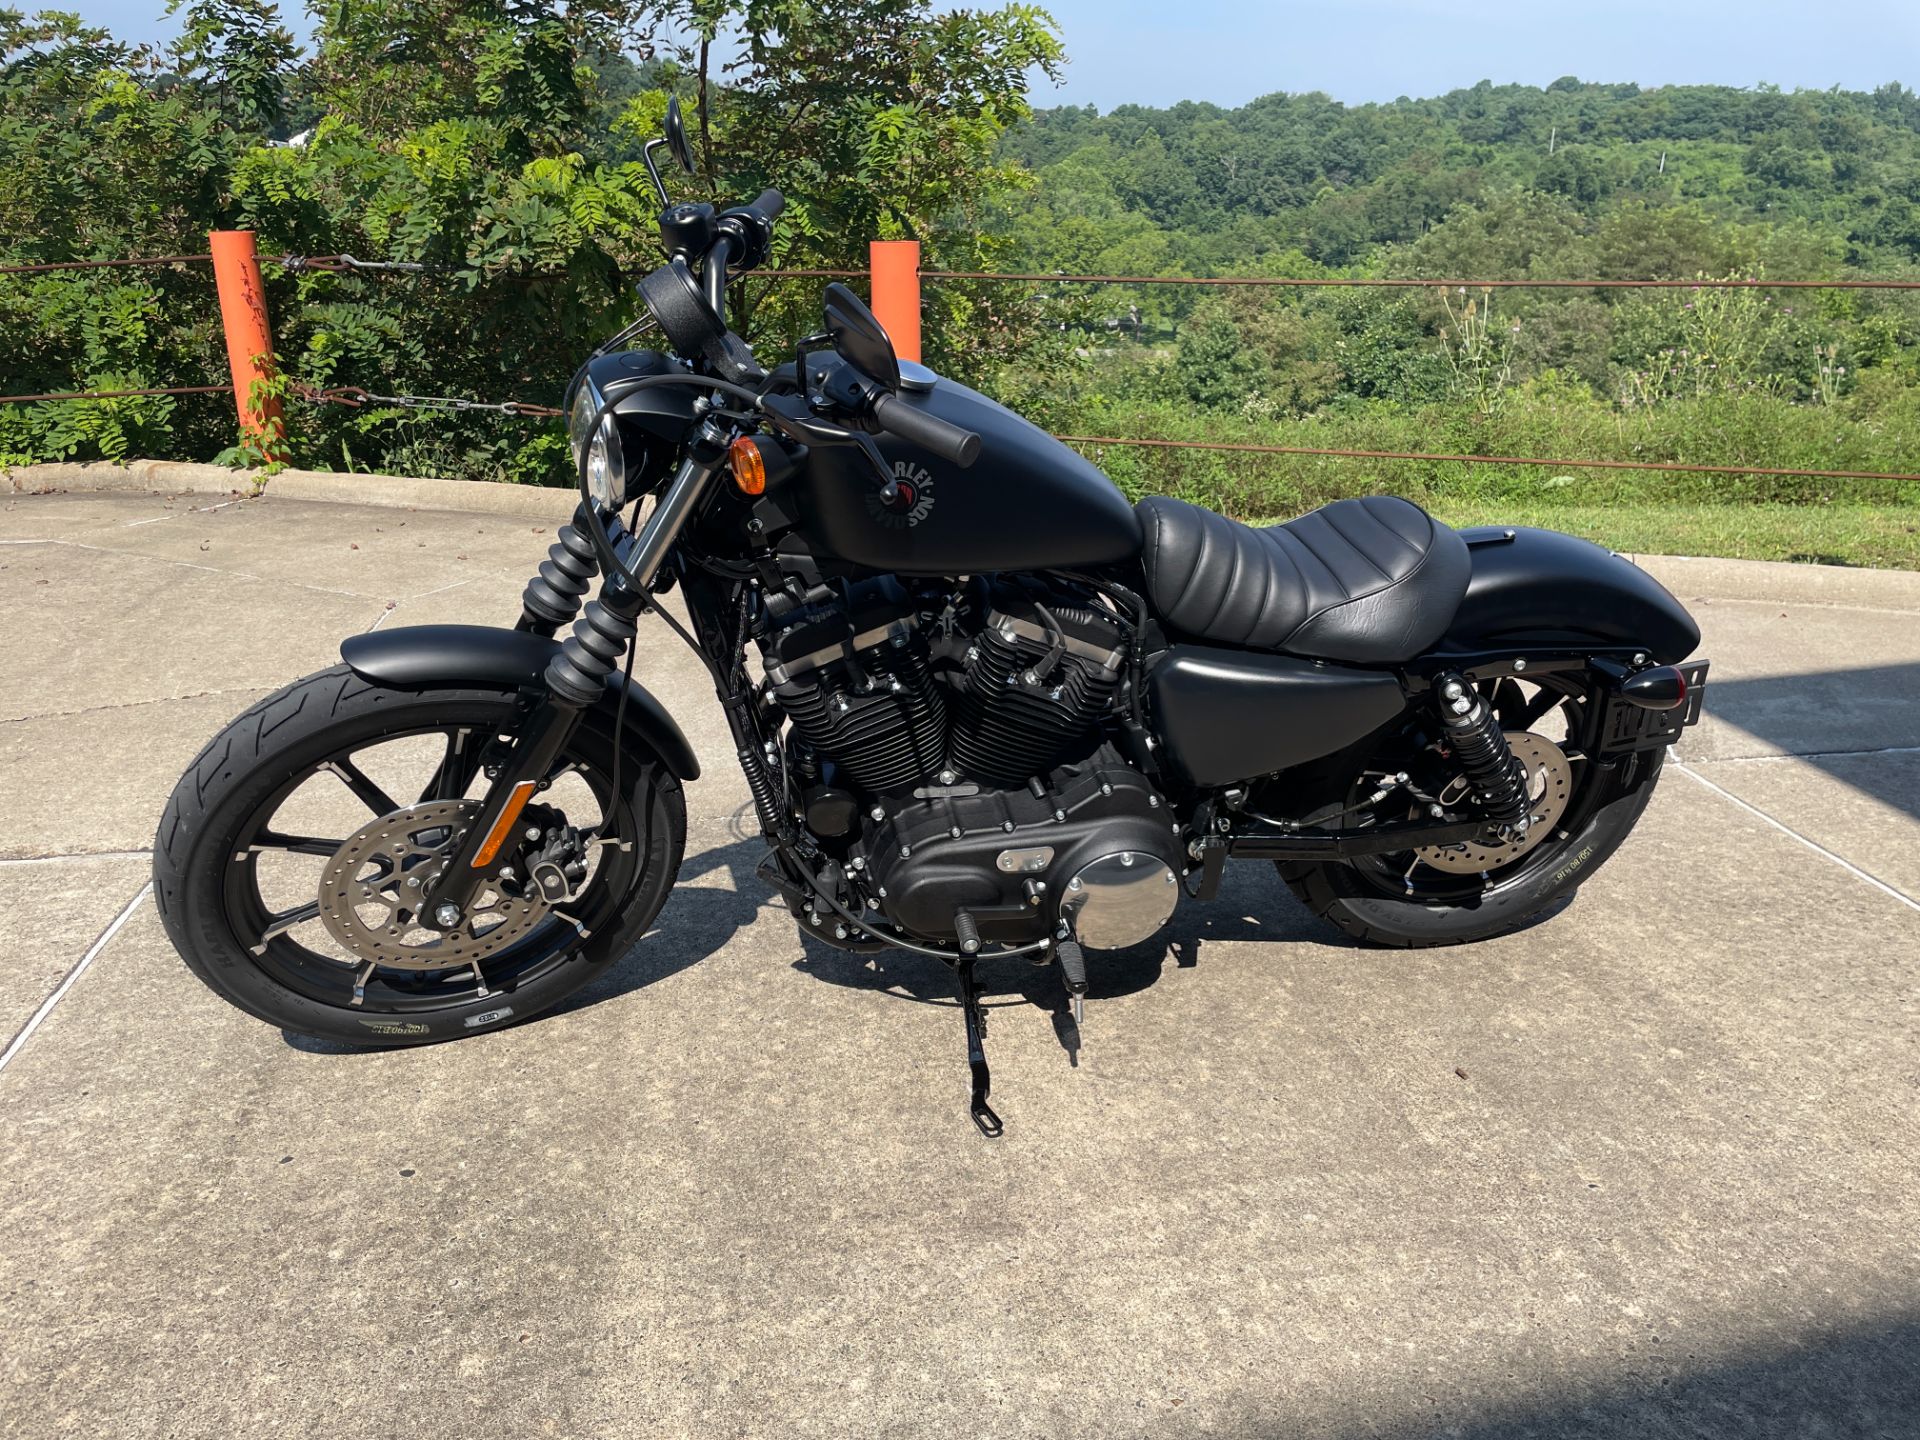 2022 Harley-Davidson Iron 883™ in Williamstown, West Virginia - Photo 5